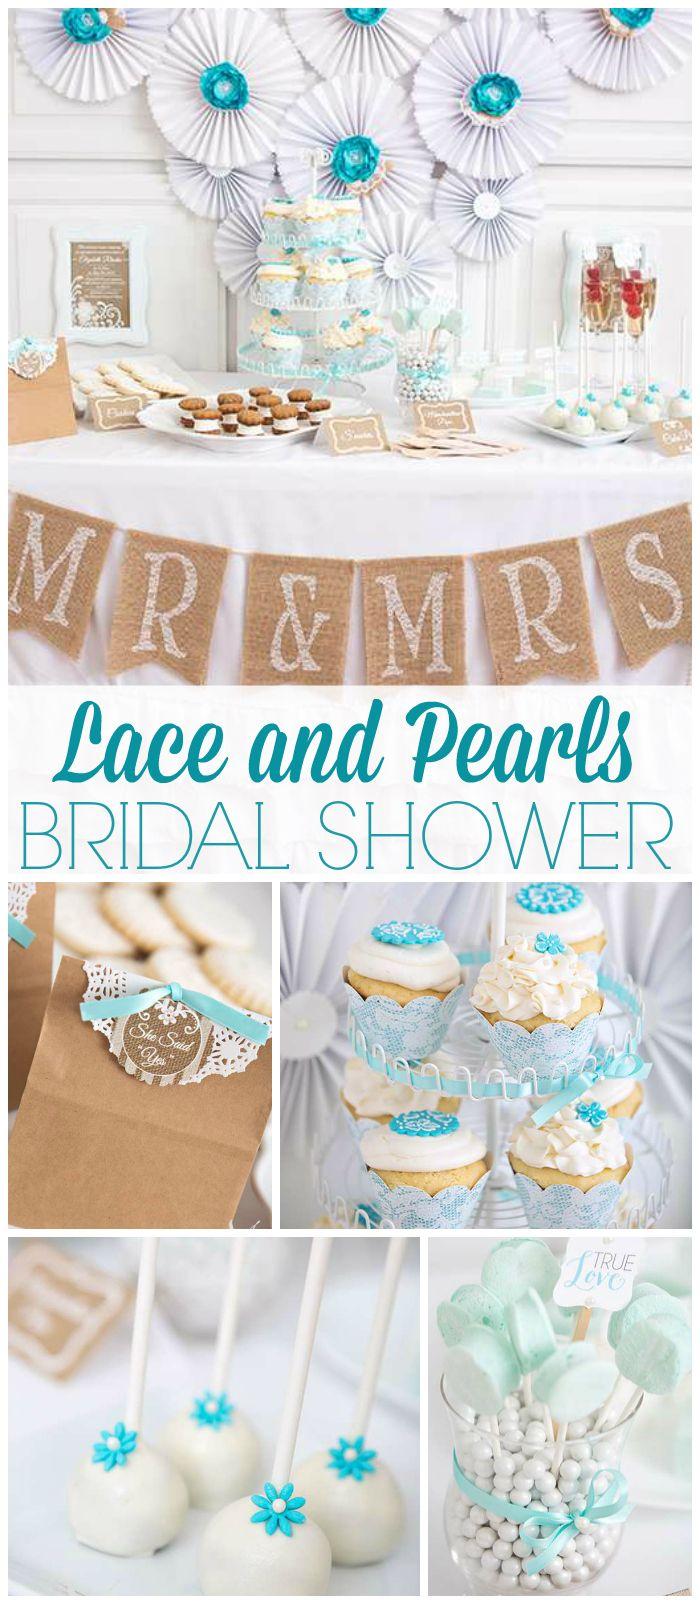 زفاف - Bridal Shower / Wedding Shower / Bridal/Wedding Shower "Lace And Pearls Bridal Shower"